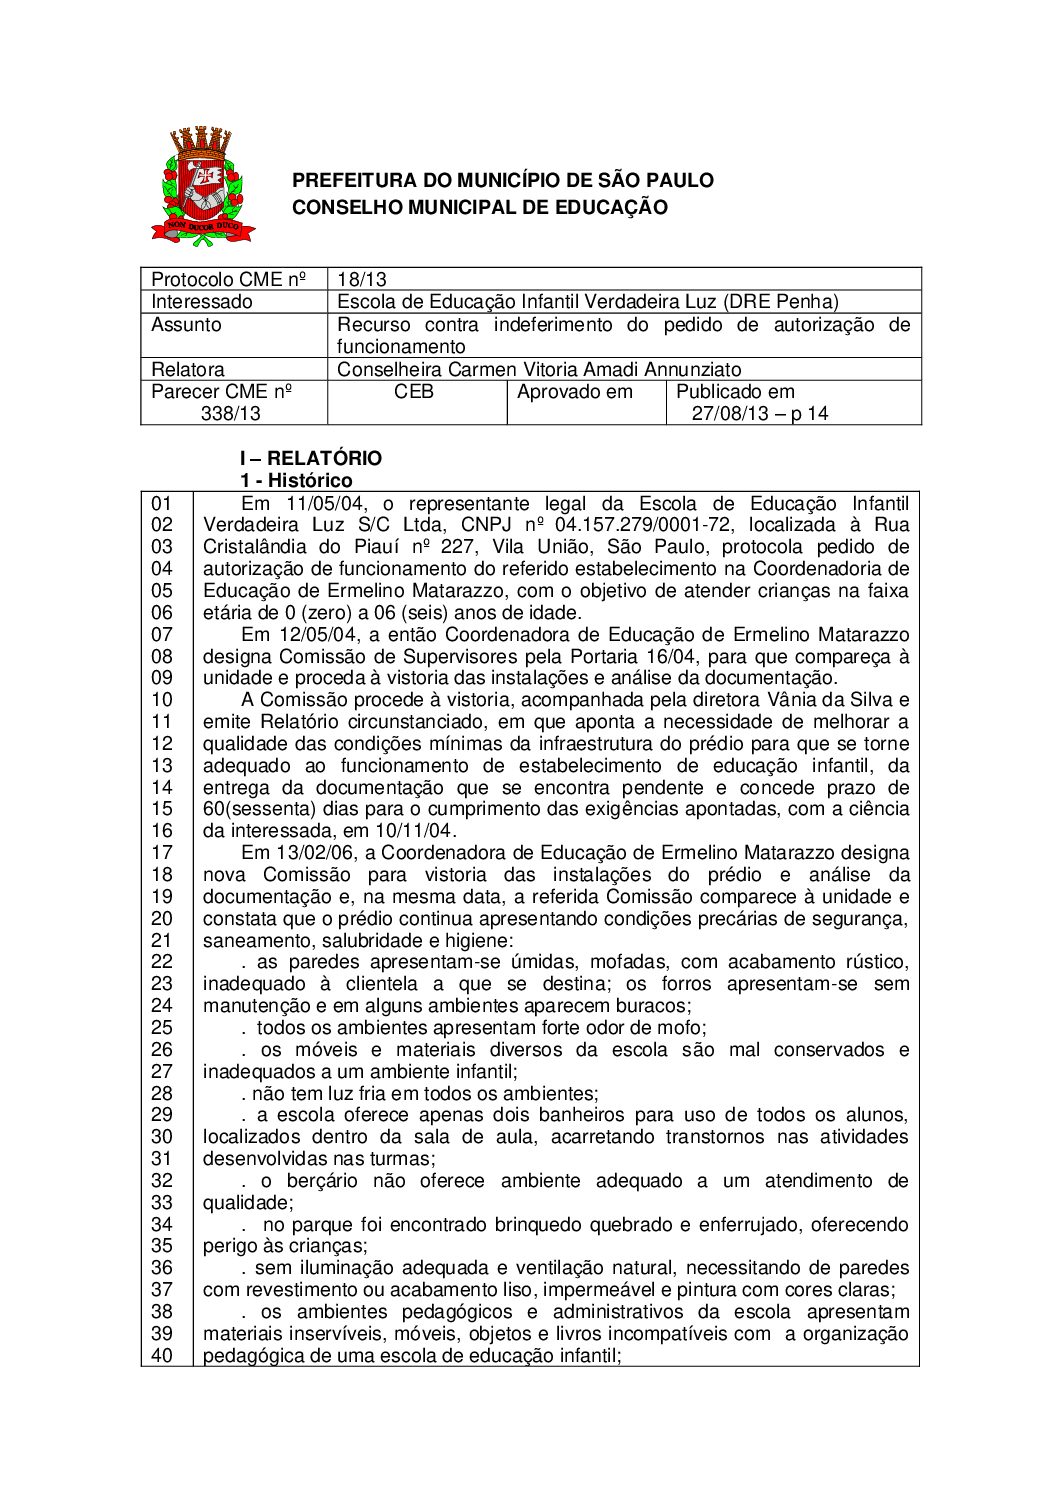 Parecer CME nº 338/2013 - Escola de Educação Infantil Verdadeira Luz (DRE Penha) - Recurso contra indeferimento do pedido de autorização de funcionamento 